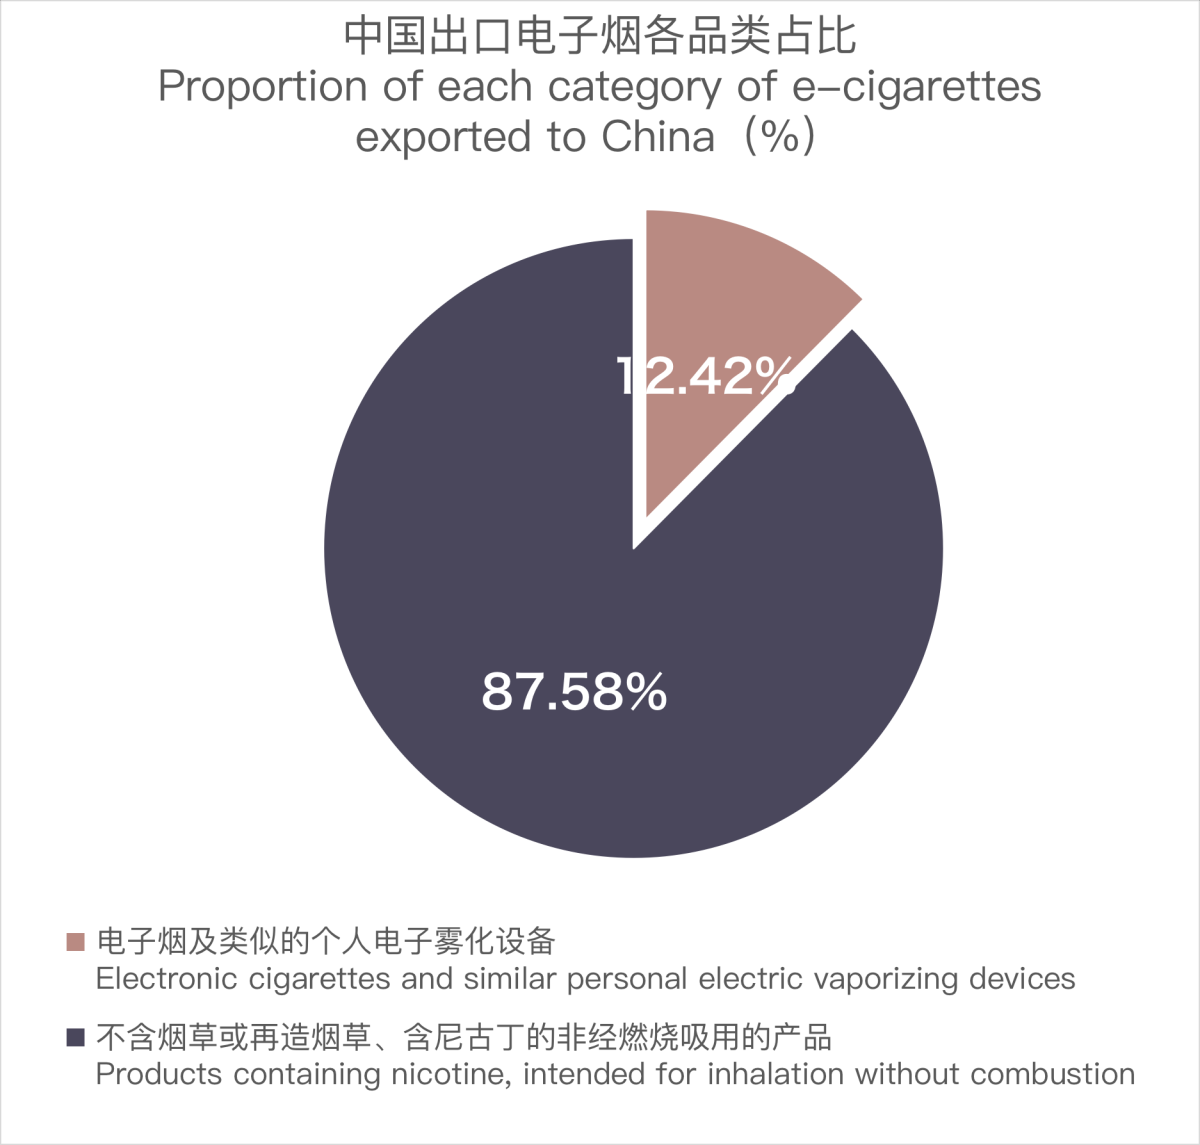 12月中国出口新西兰电子烟约760万美元 环比下降4.73%